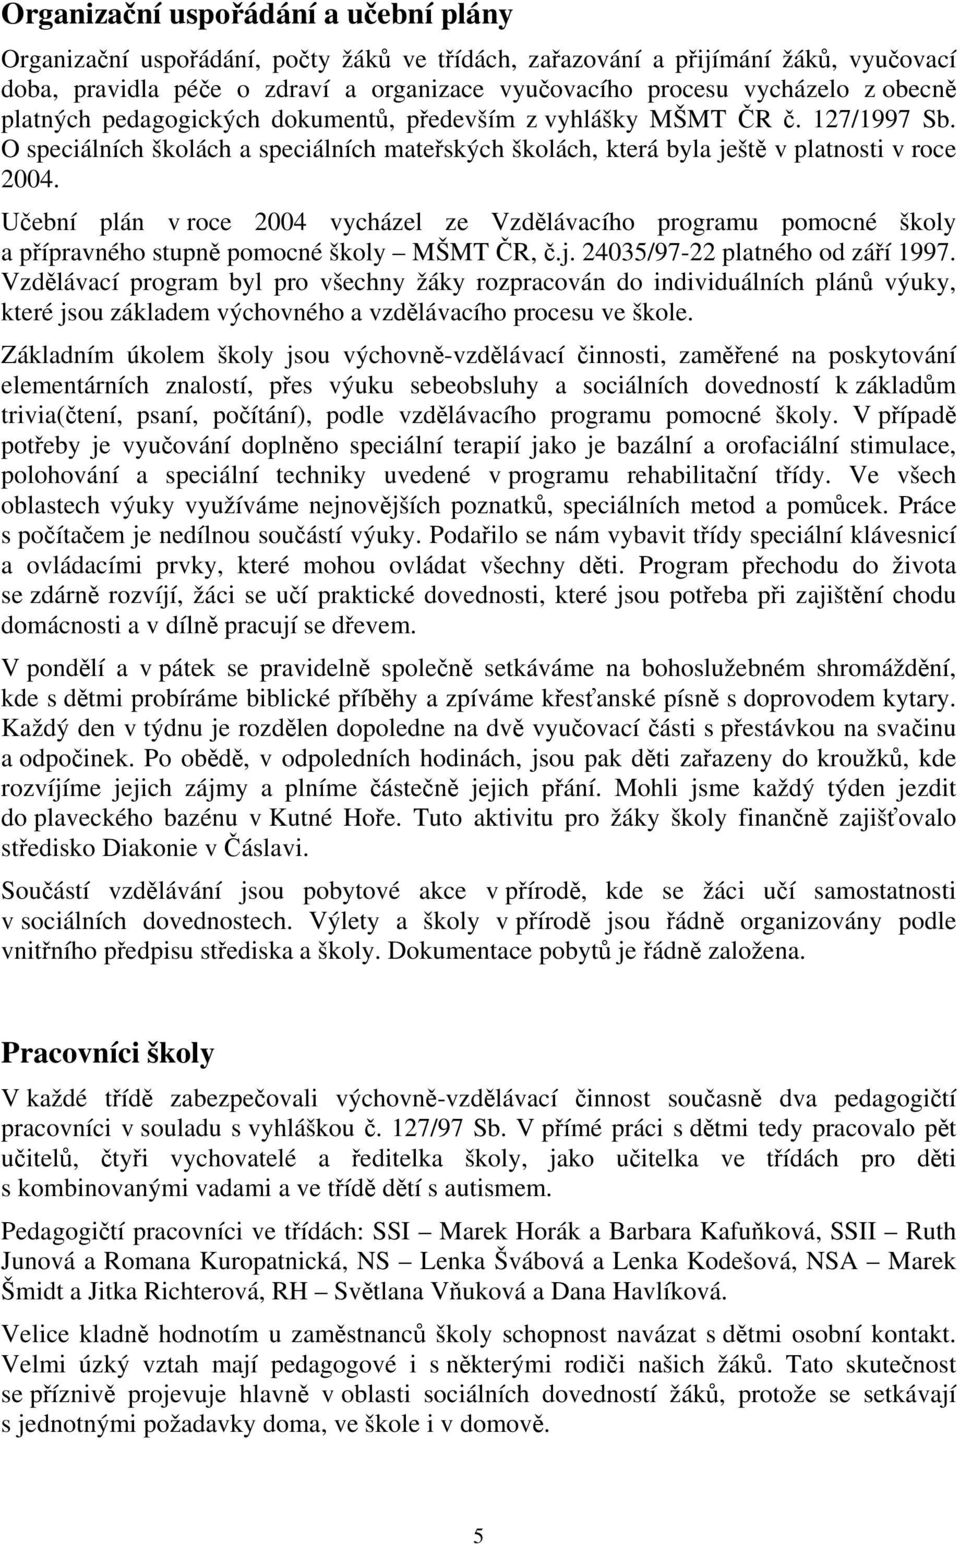 Učební plán v roce 2004 vycházel ze Vzdělávacího programu pomocné školy a přípravného stupně pomocné školy MŠMT ČR, č.j. 24035/97-22 platného od září 1997.